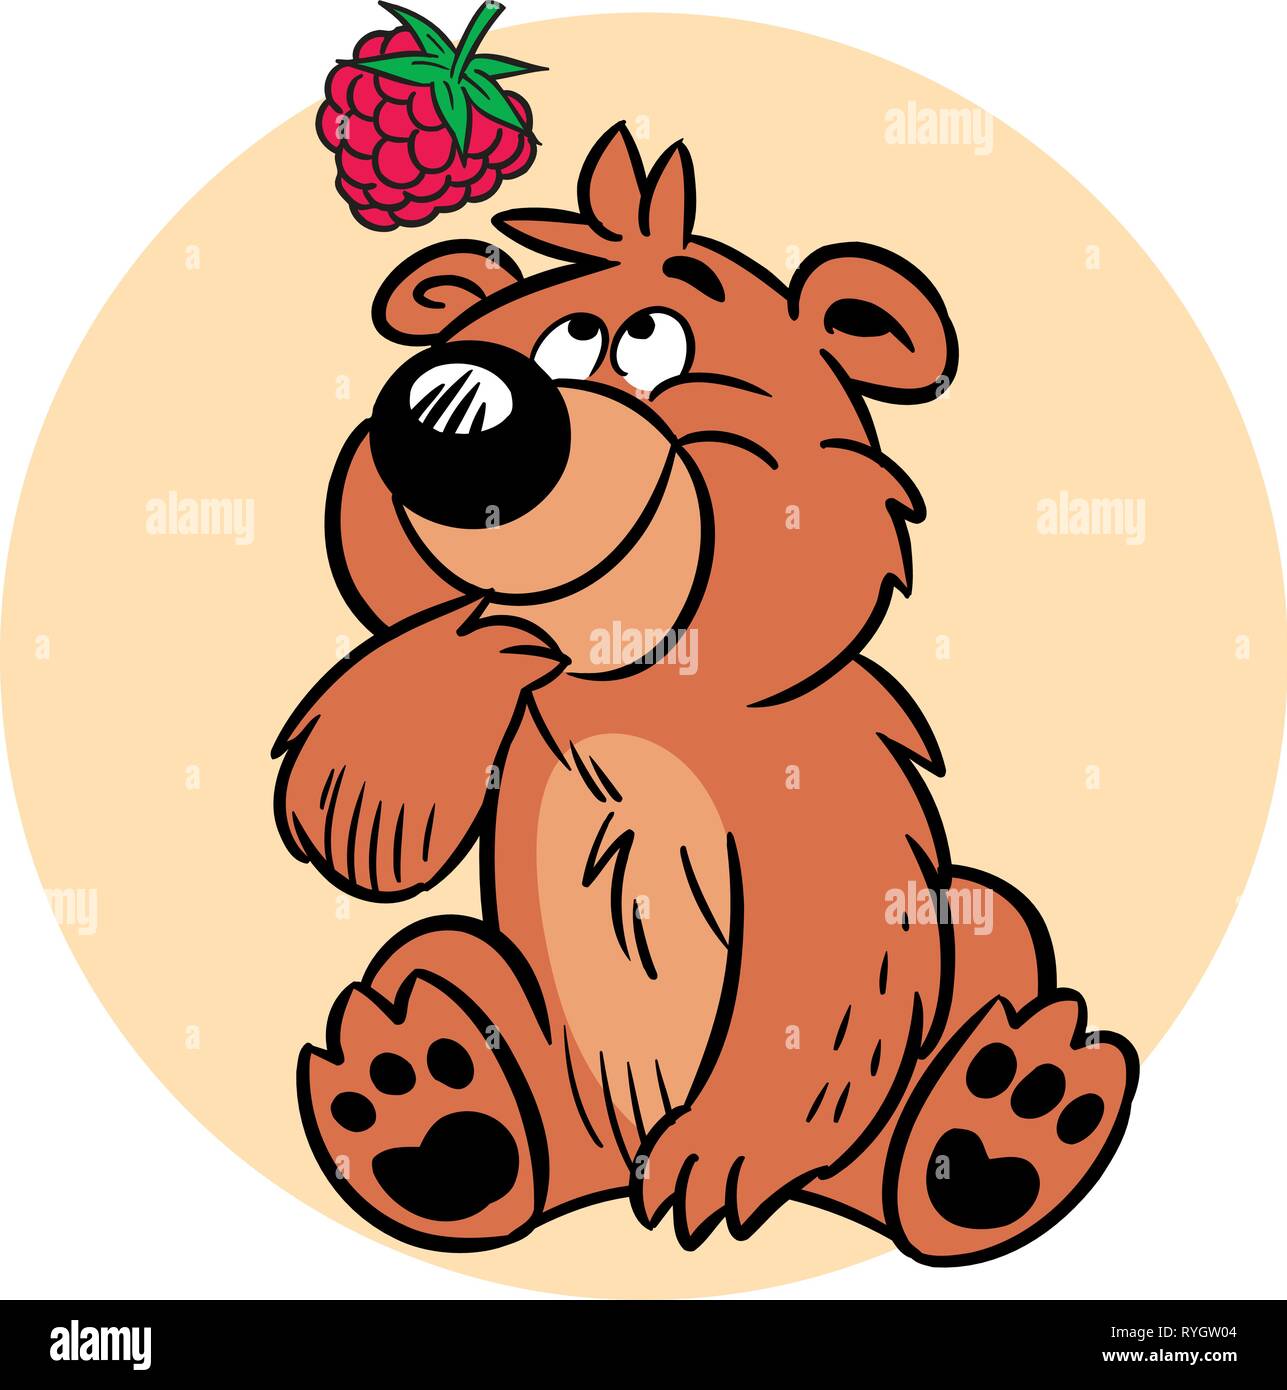 L'illustration montre un drôle d'ours, qui se penche sur les framboises. En fait l'illustration cartoon style sur des calques distincts. Illustration de Vecteur